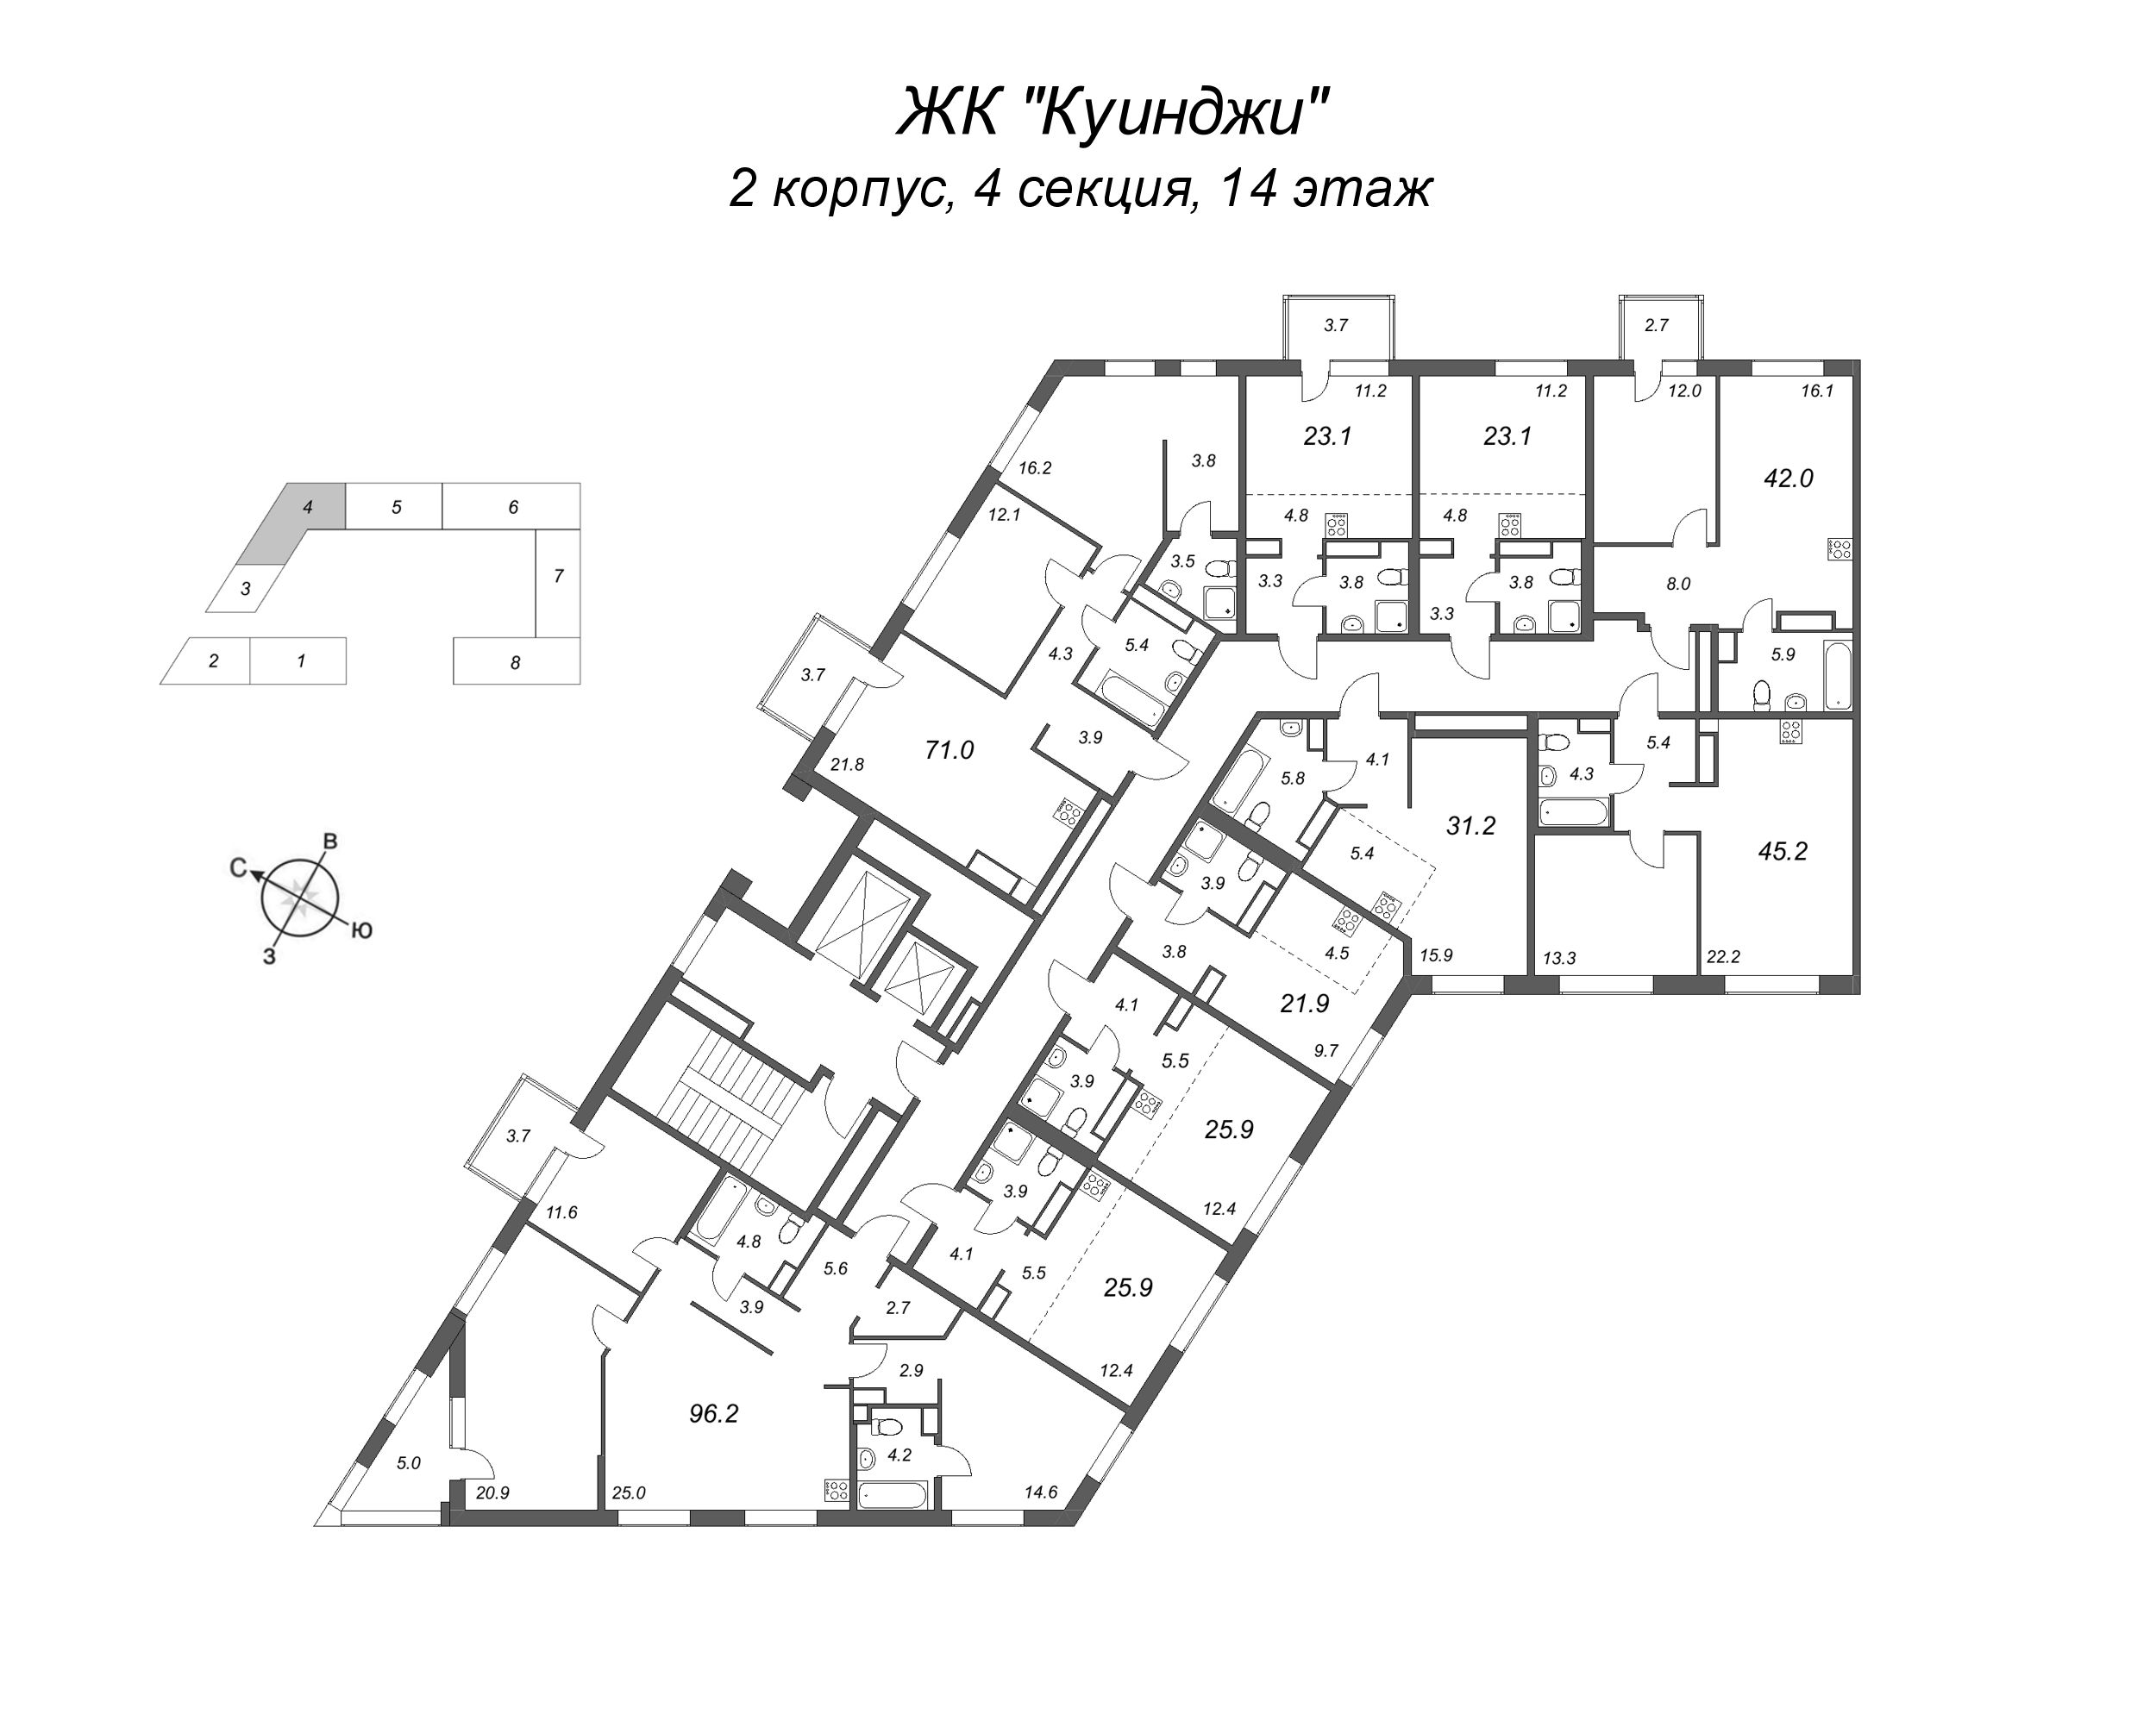 Квартира-студия, 23.1 м² в ЖК "Куинджи" - планировка этажа